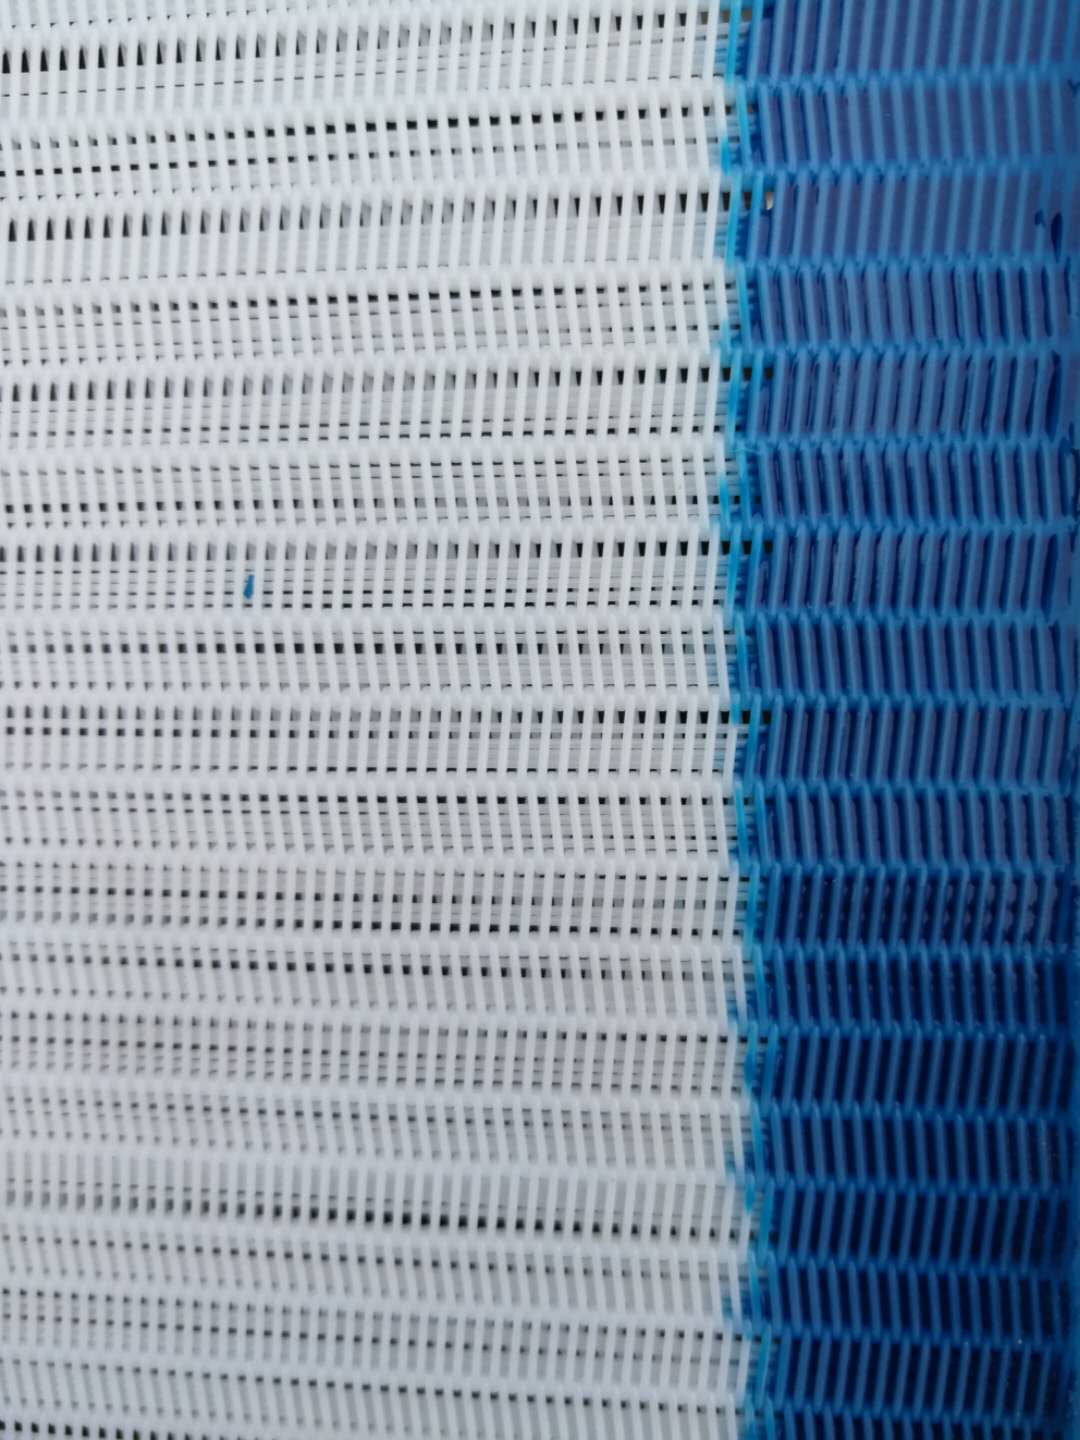 干燥纸张用聚酯编织干网系列